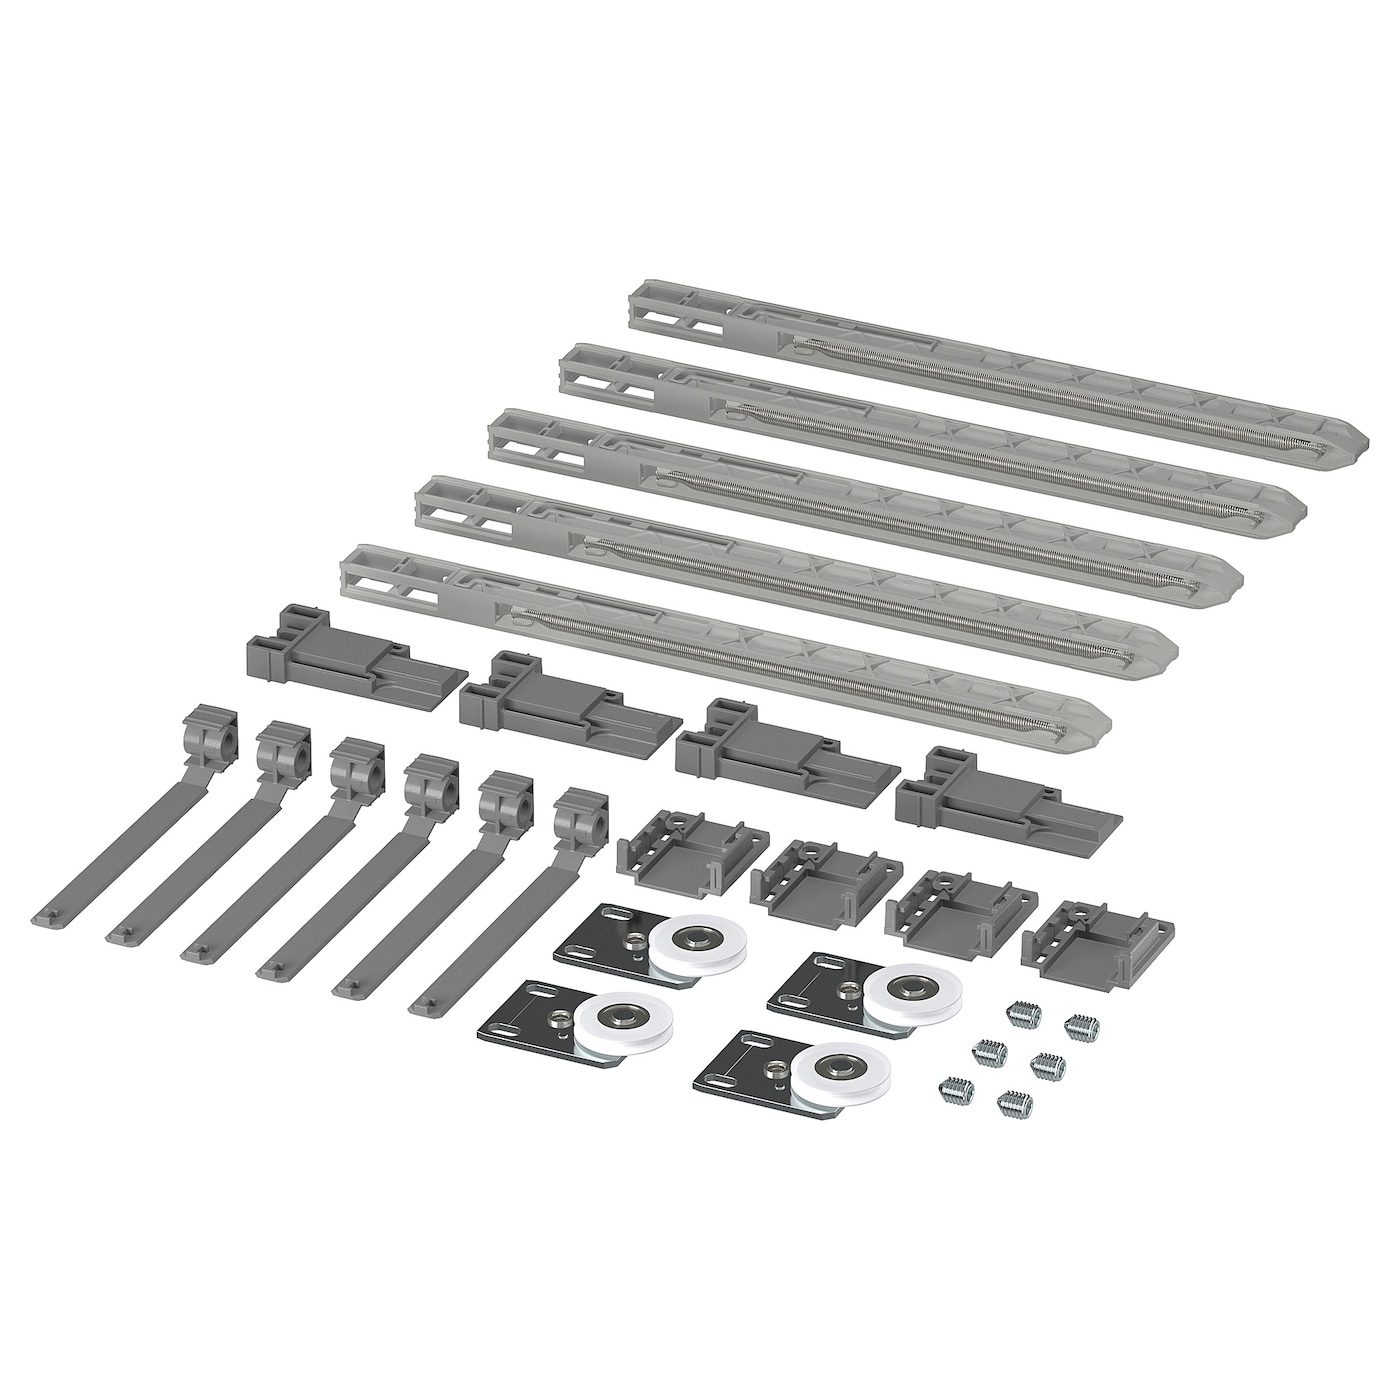 Комплект оборудования для тройной направляющей - SKYTTA IKEA/ СКЮТТА ИКЕА, 29 шт, серебрянный